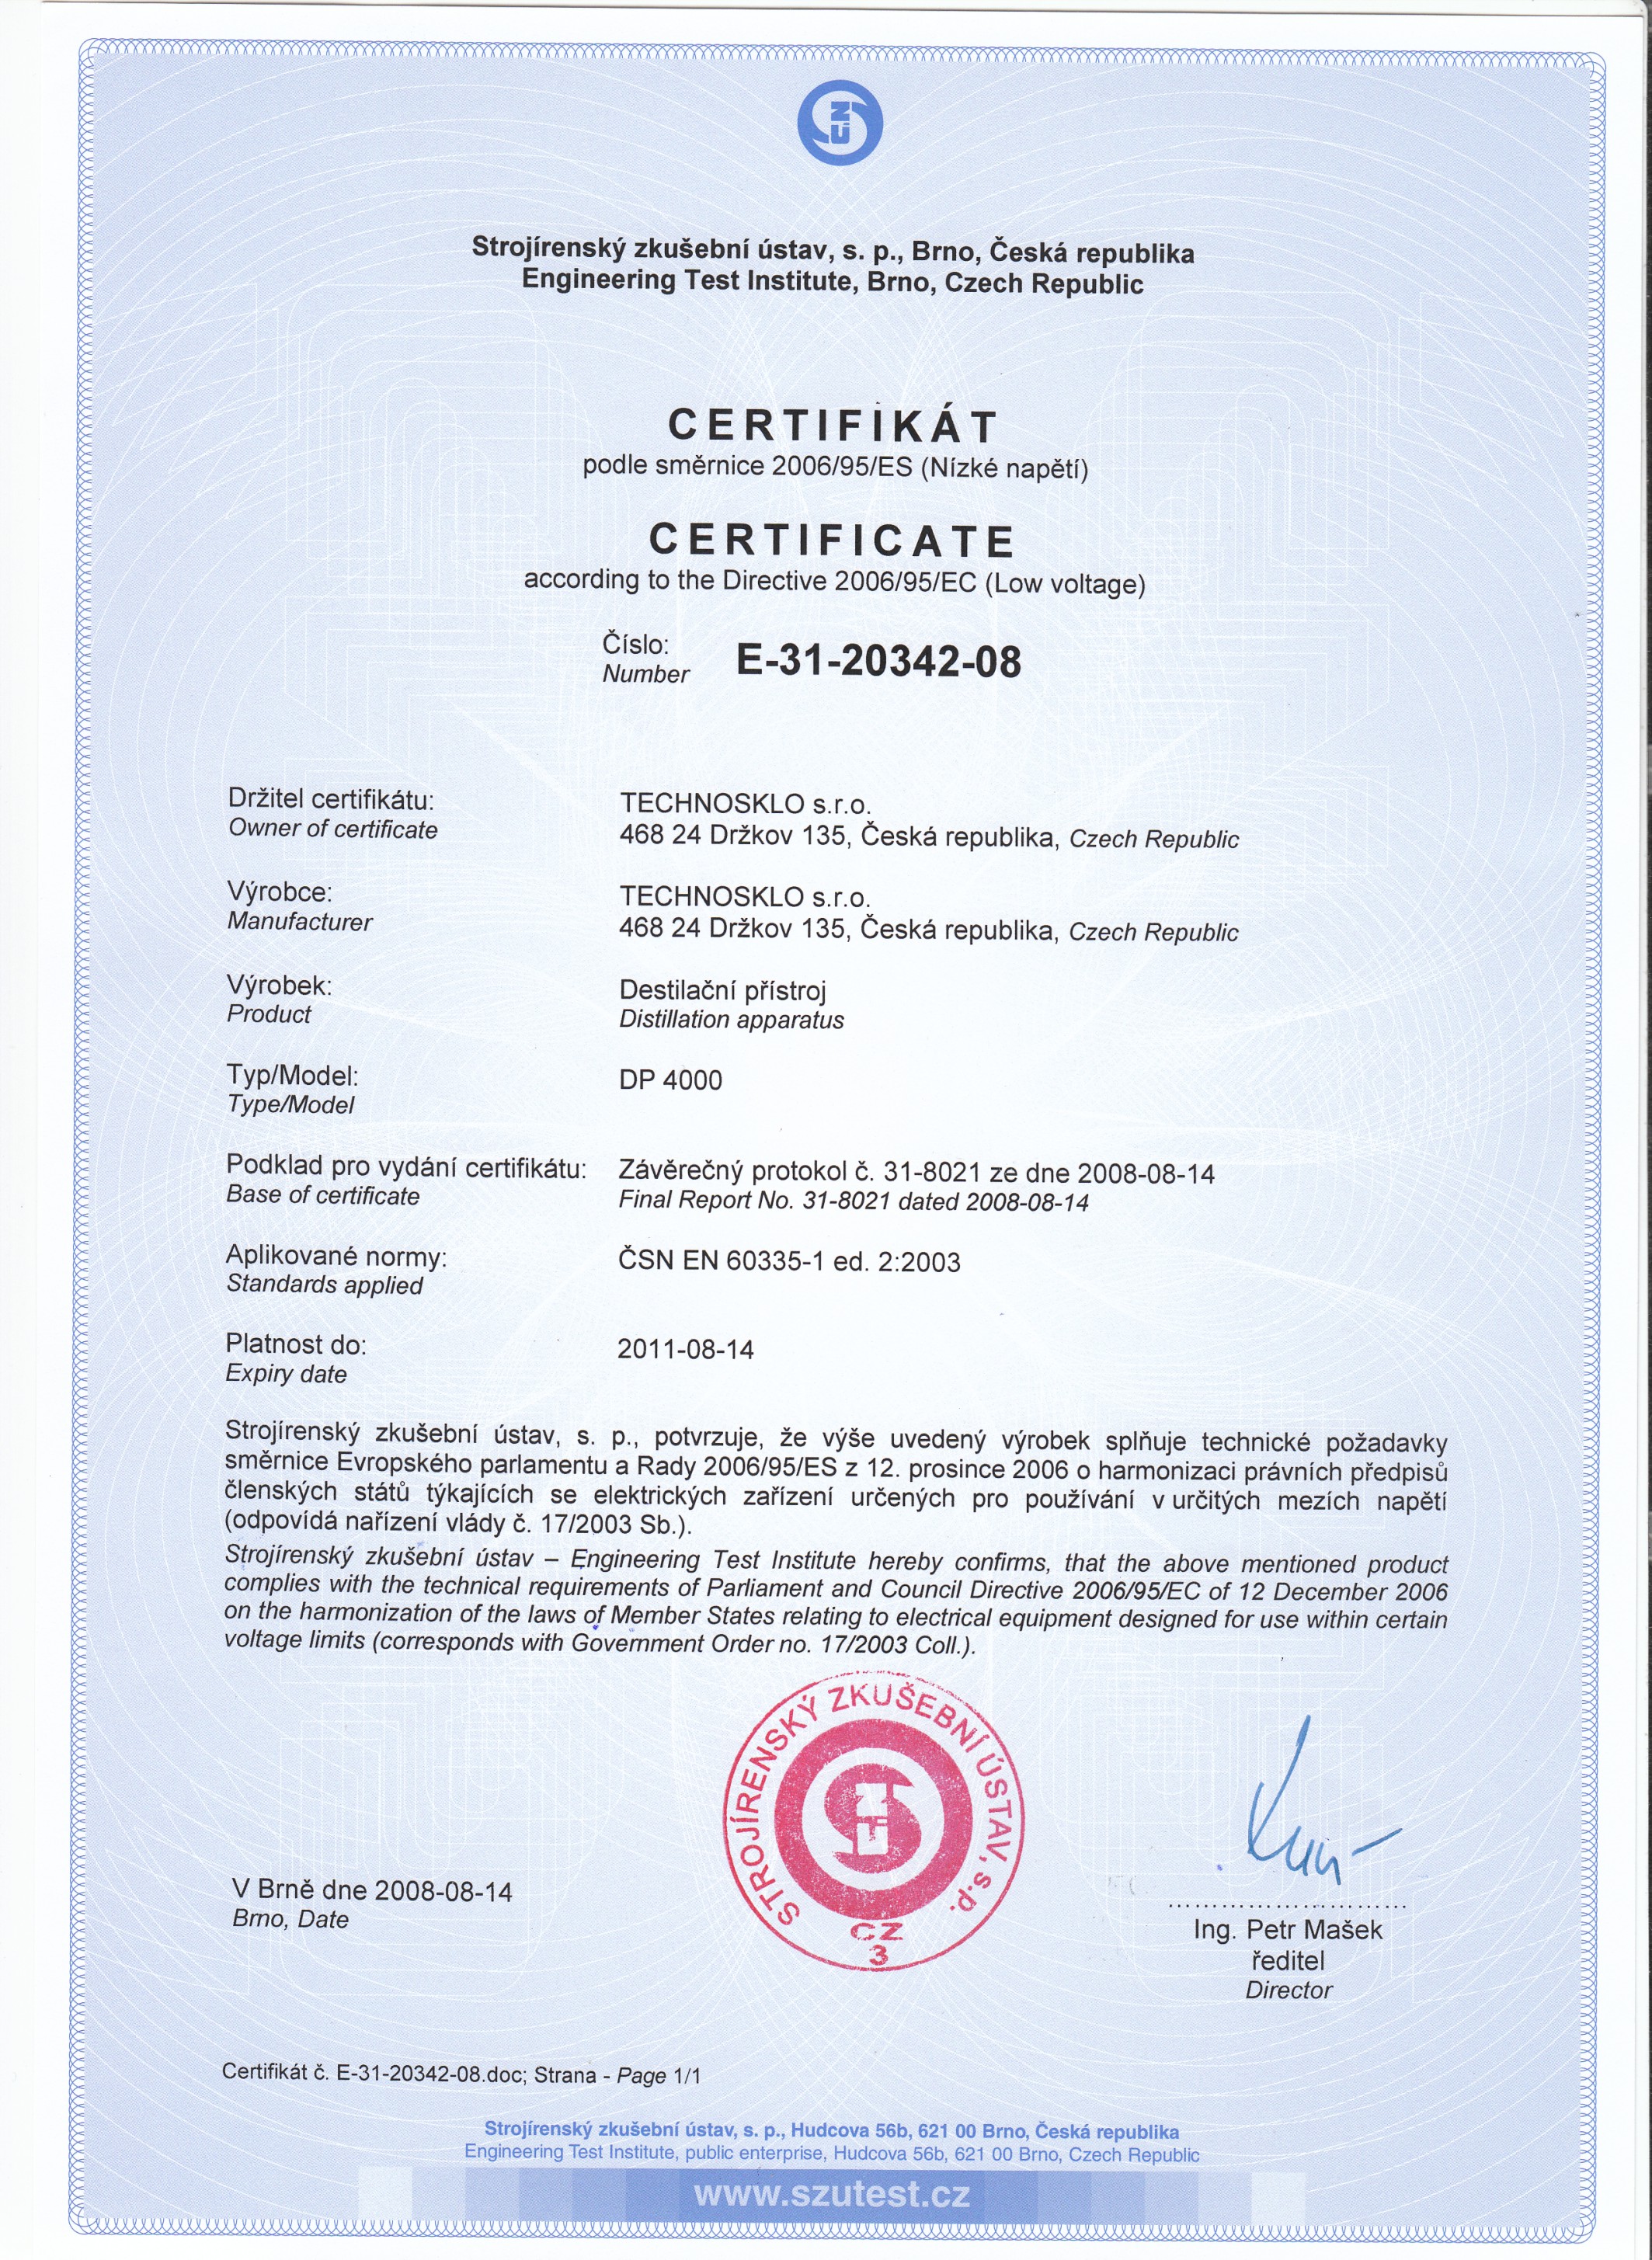 Certifikát podle směrnice 2009/95/ES